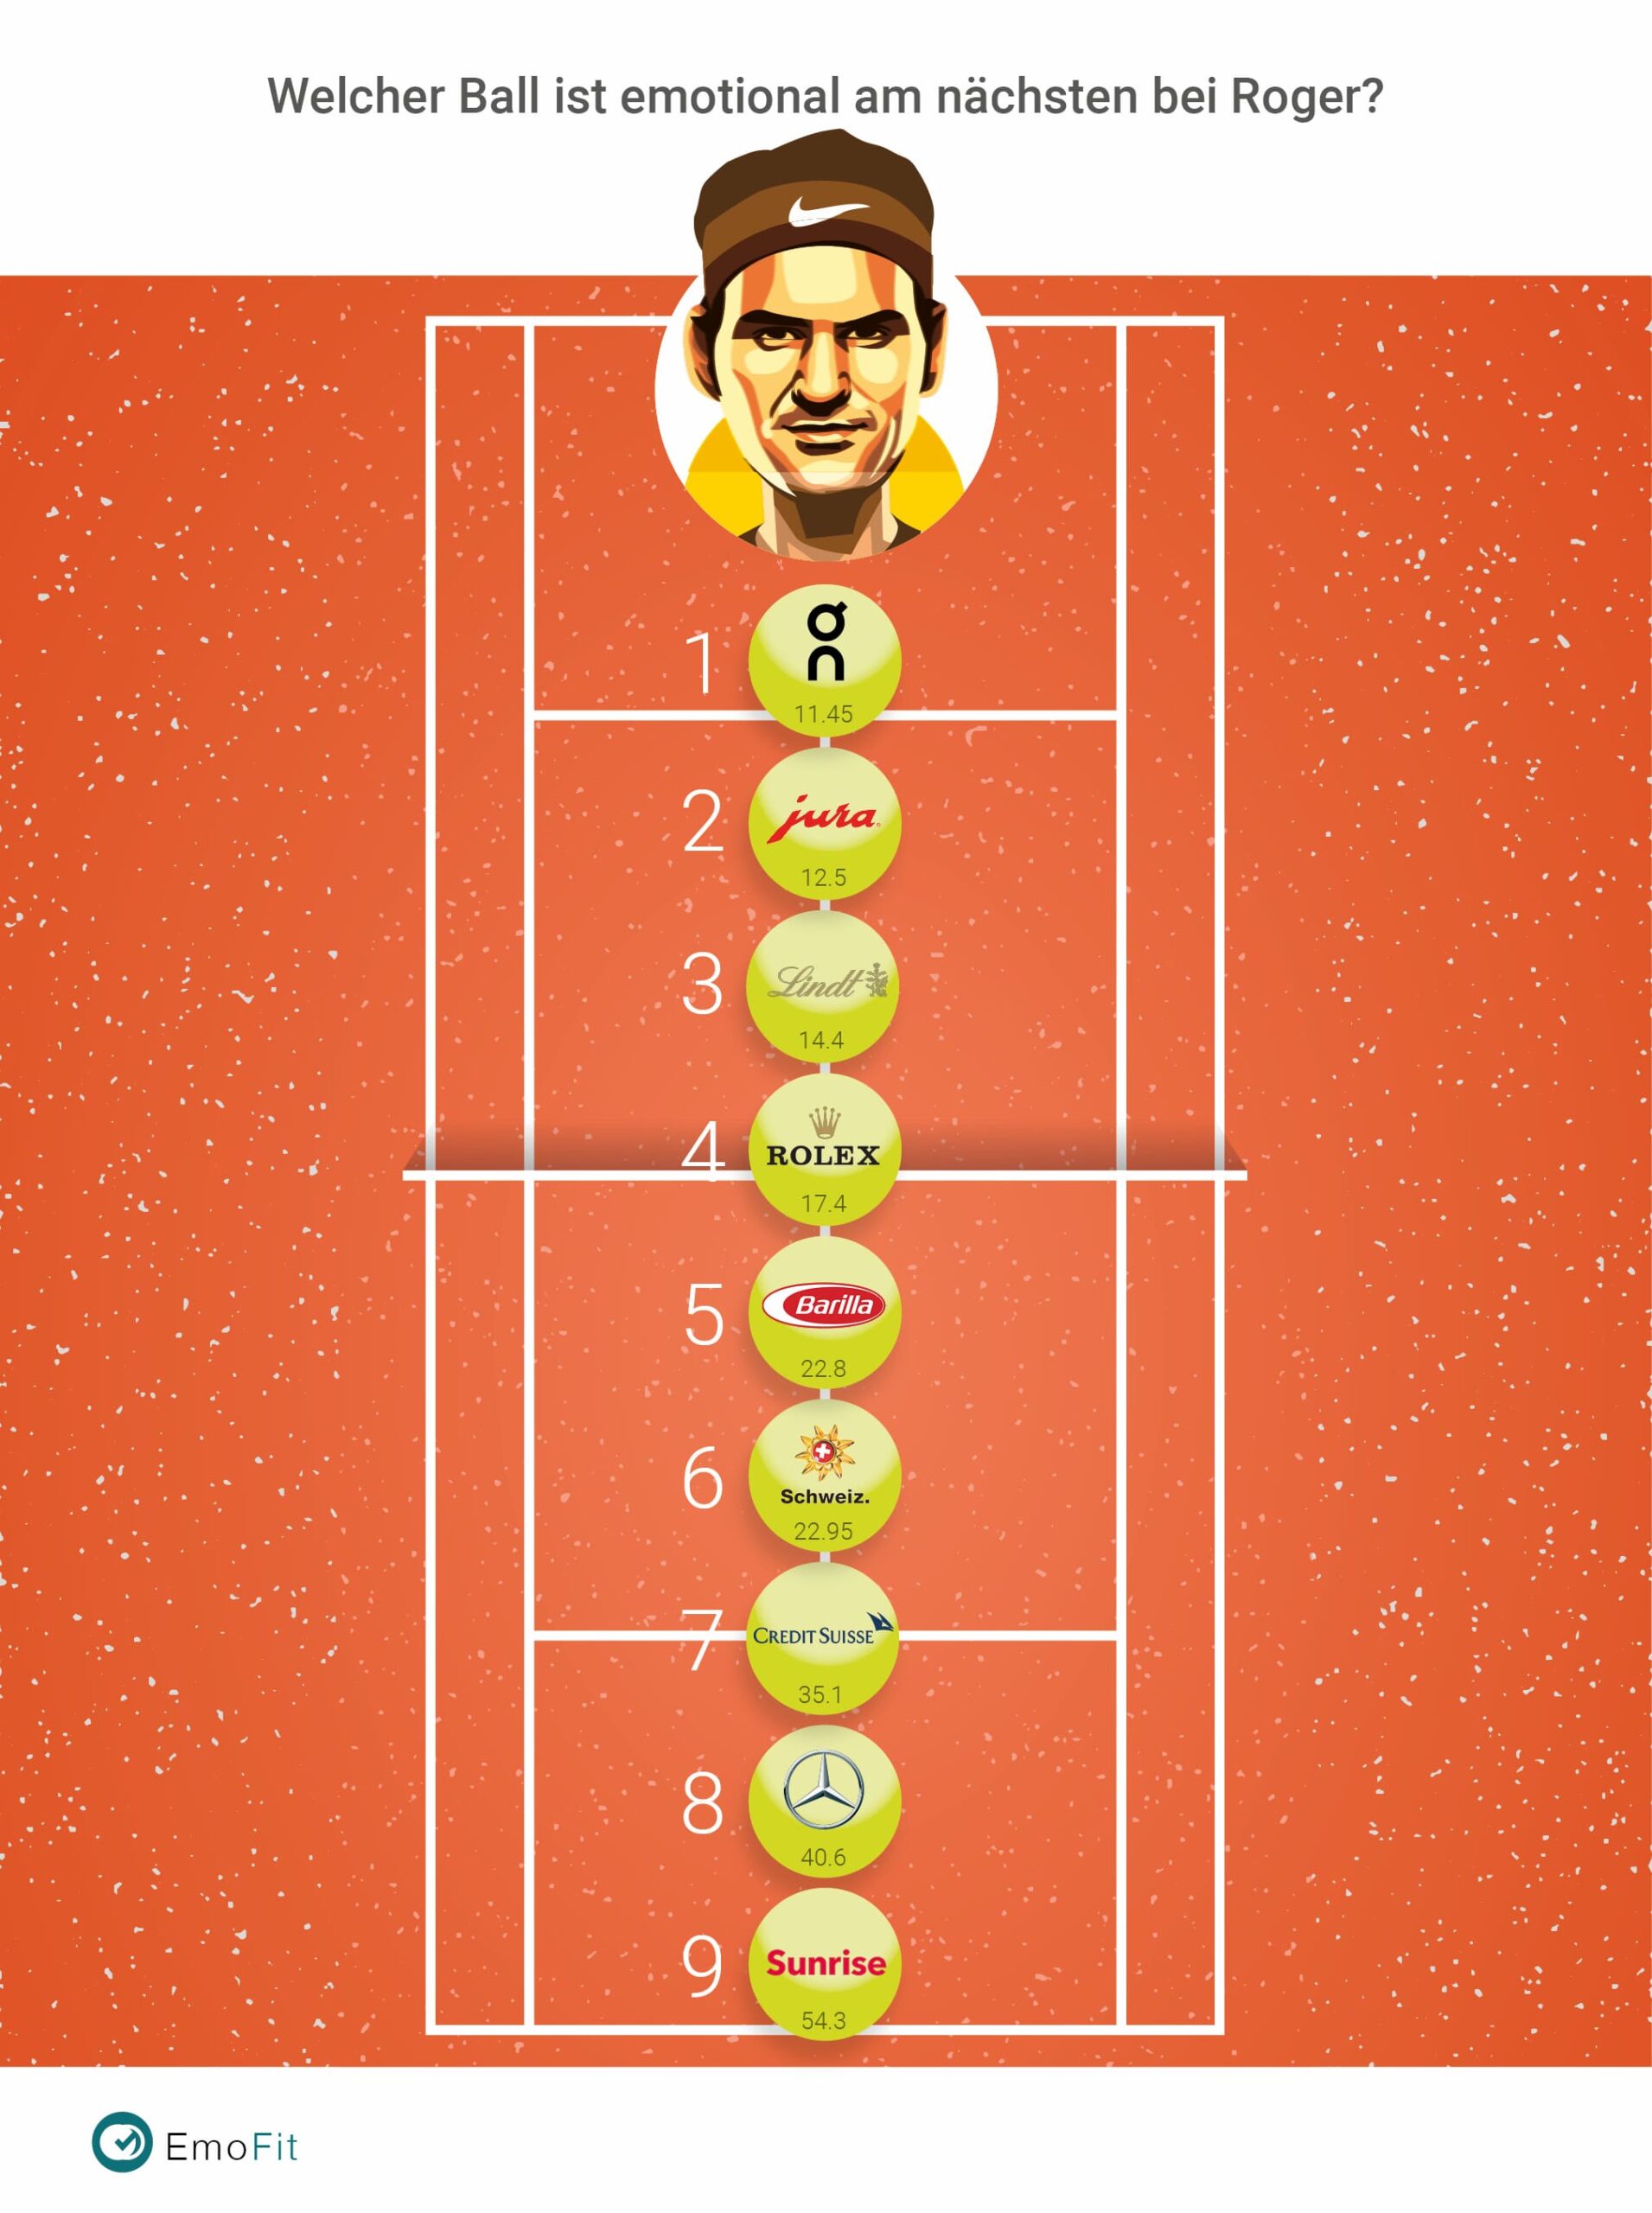 Roger Federer als Markenbotschafter im Neuromarketing Ranking